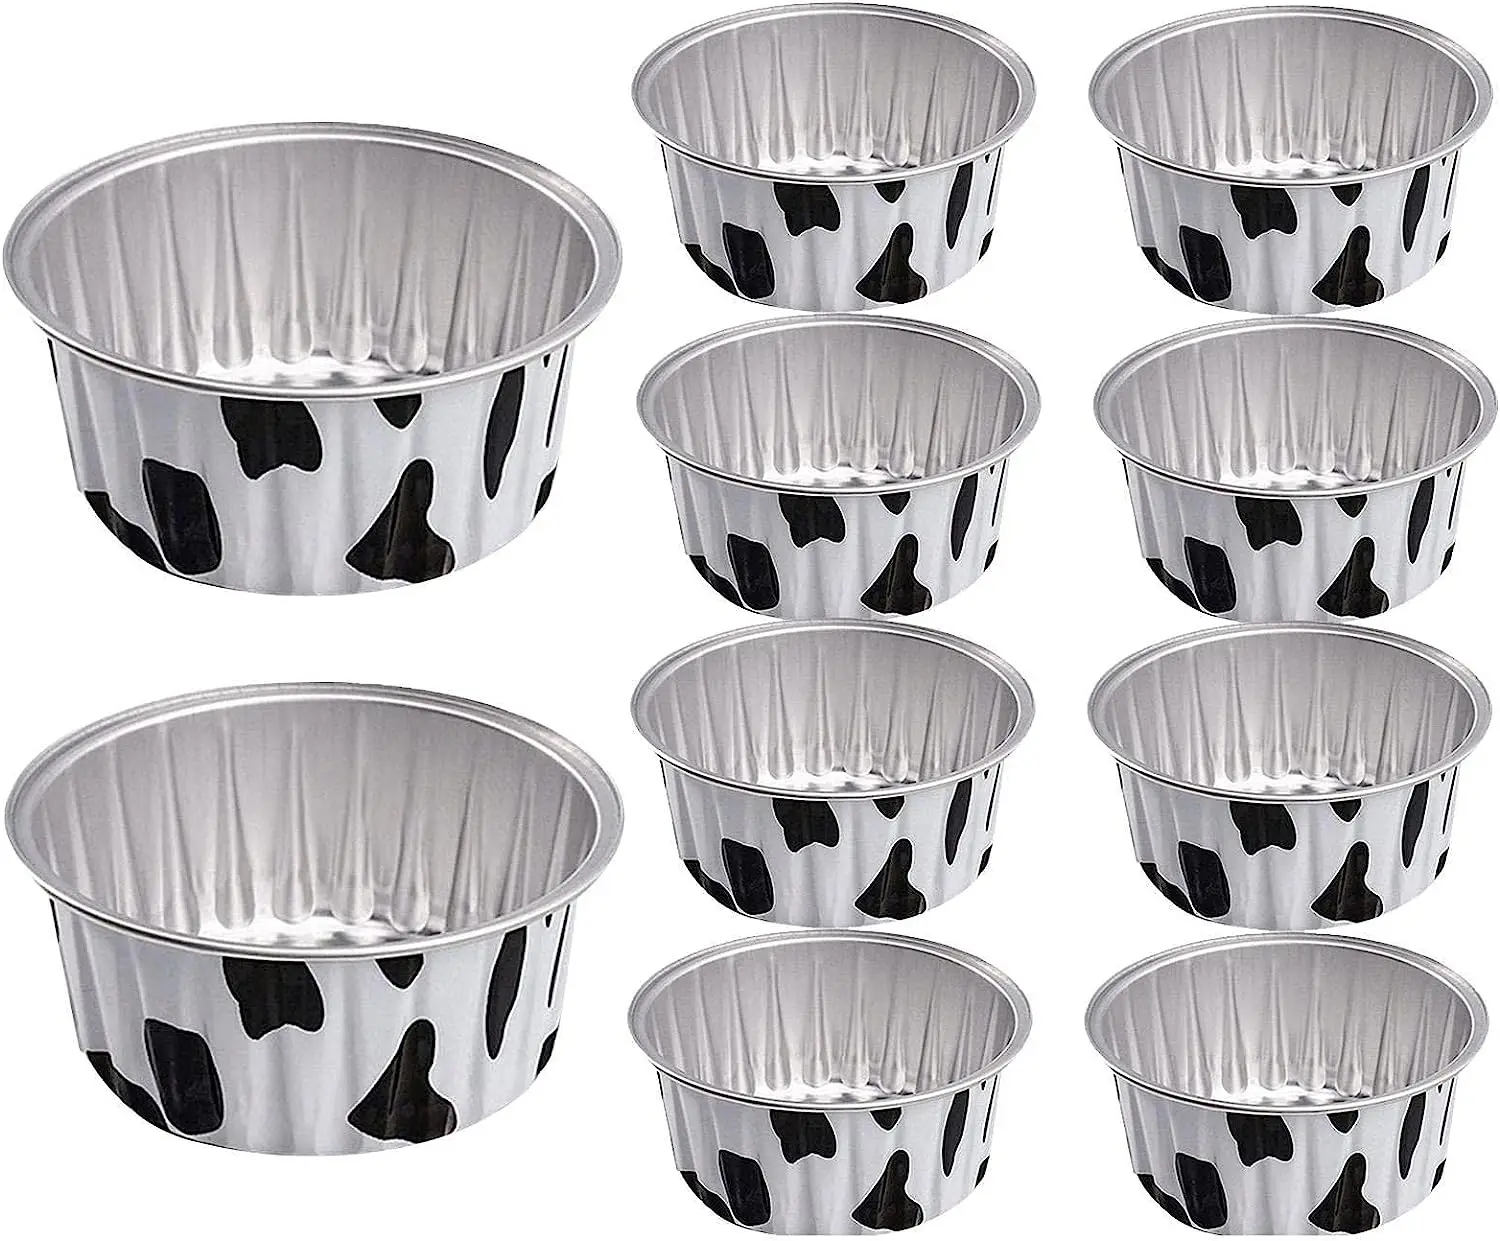 Folie de aluminiu Cupe de Copt, 10buc Reutilizabile Folie Ceașcă de Staniu, Aluminiu Cupe Tort pentru Nunta de Crăciun Bucătărie Petrecere (130ml) - 5